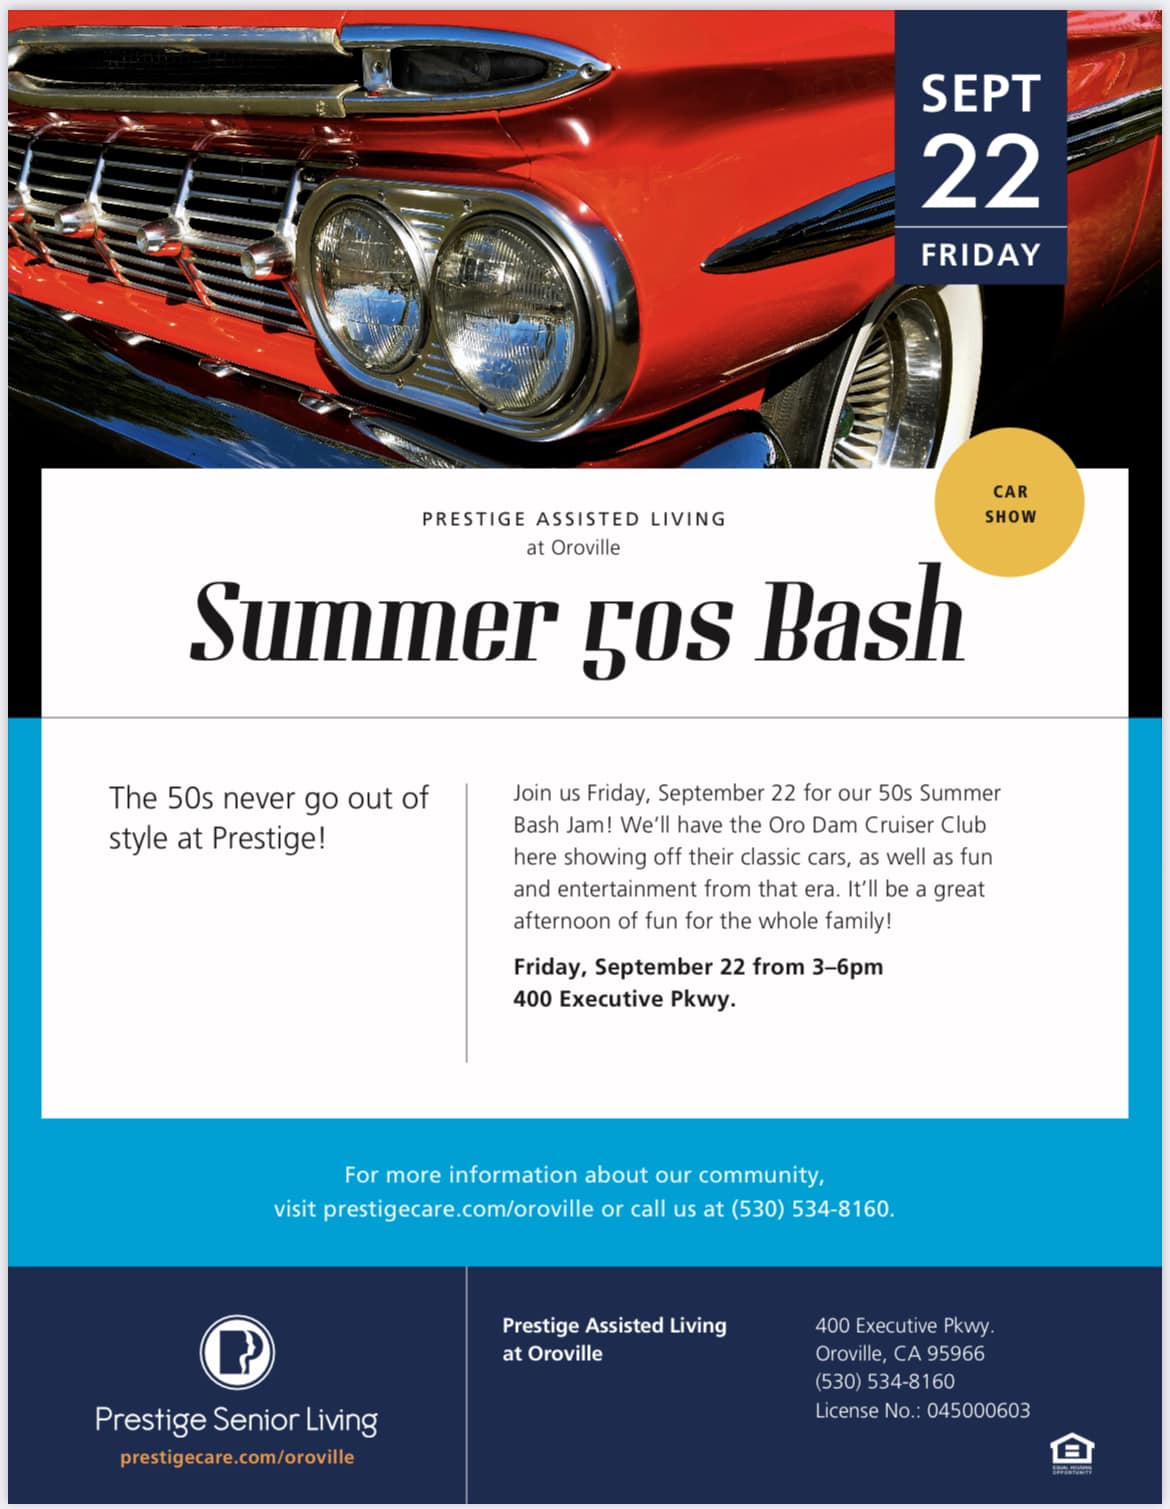 Summer 50s Bash Car Show